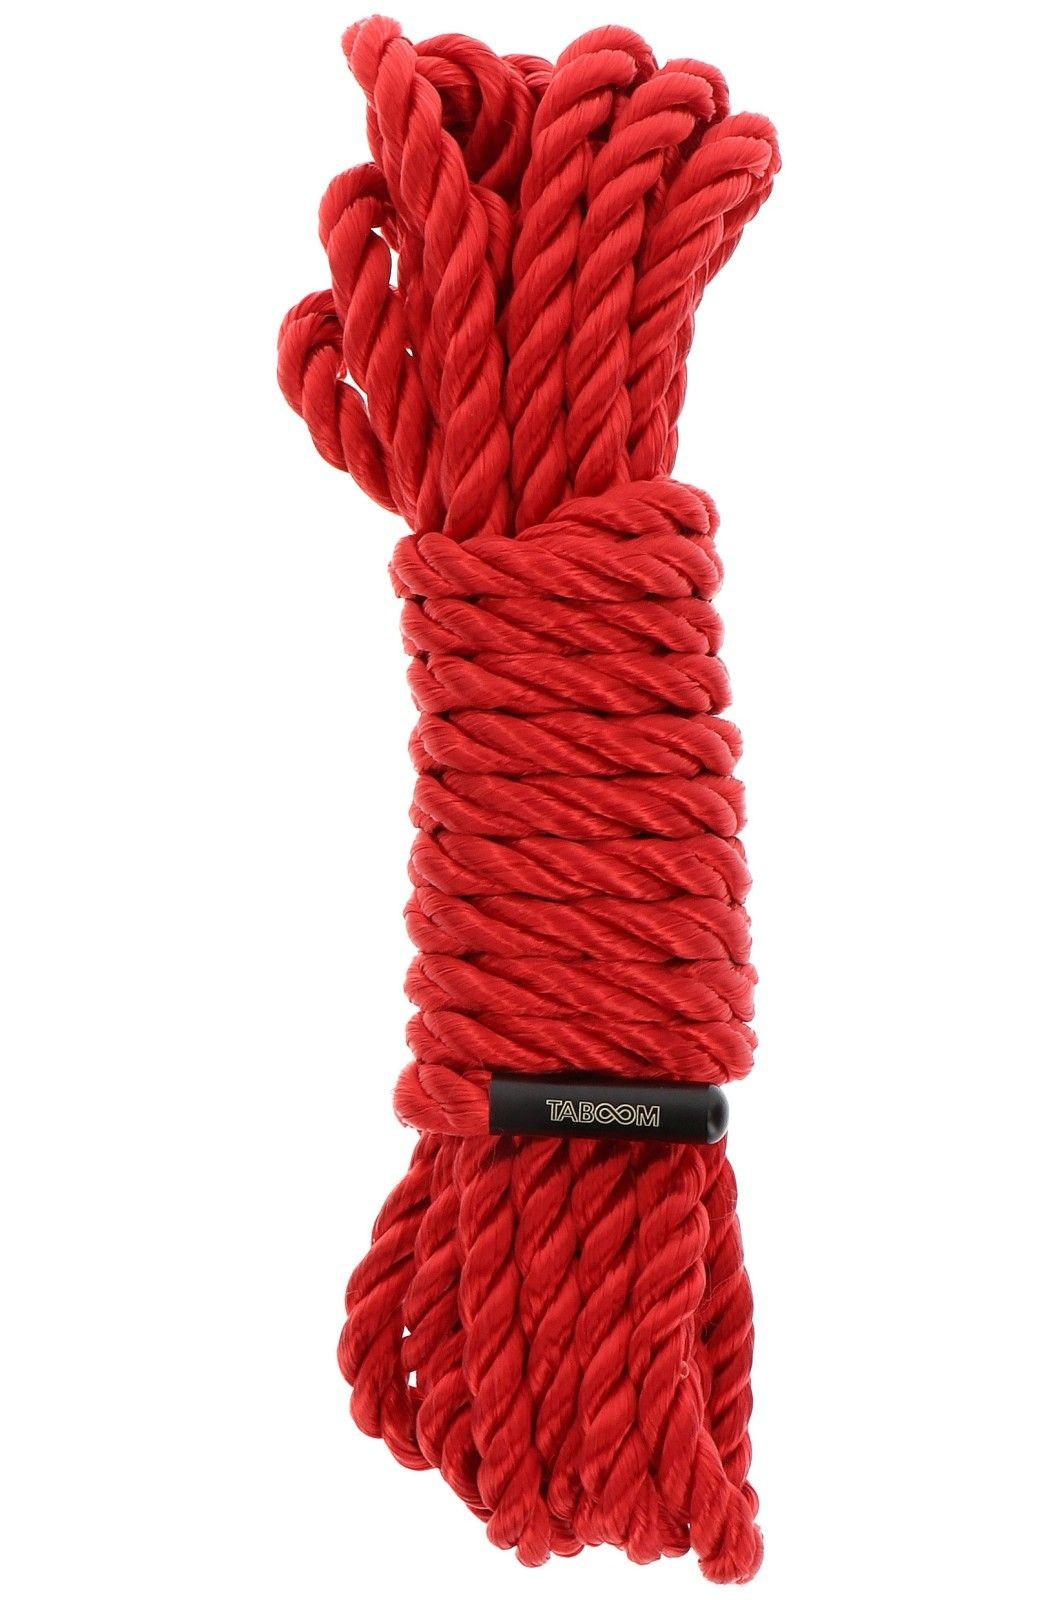 Taboom Červené lano - Taboom (5 m)